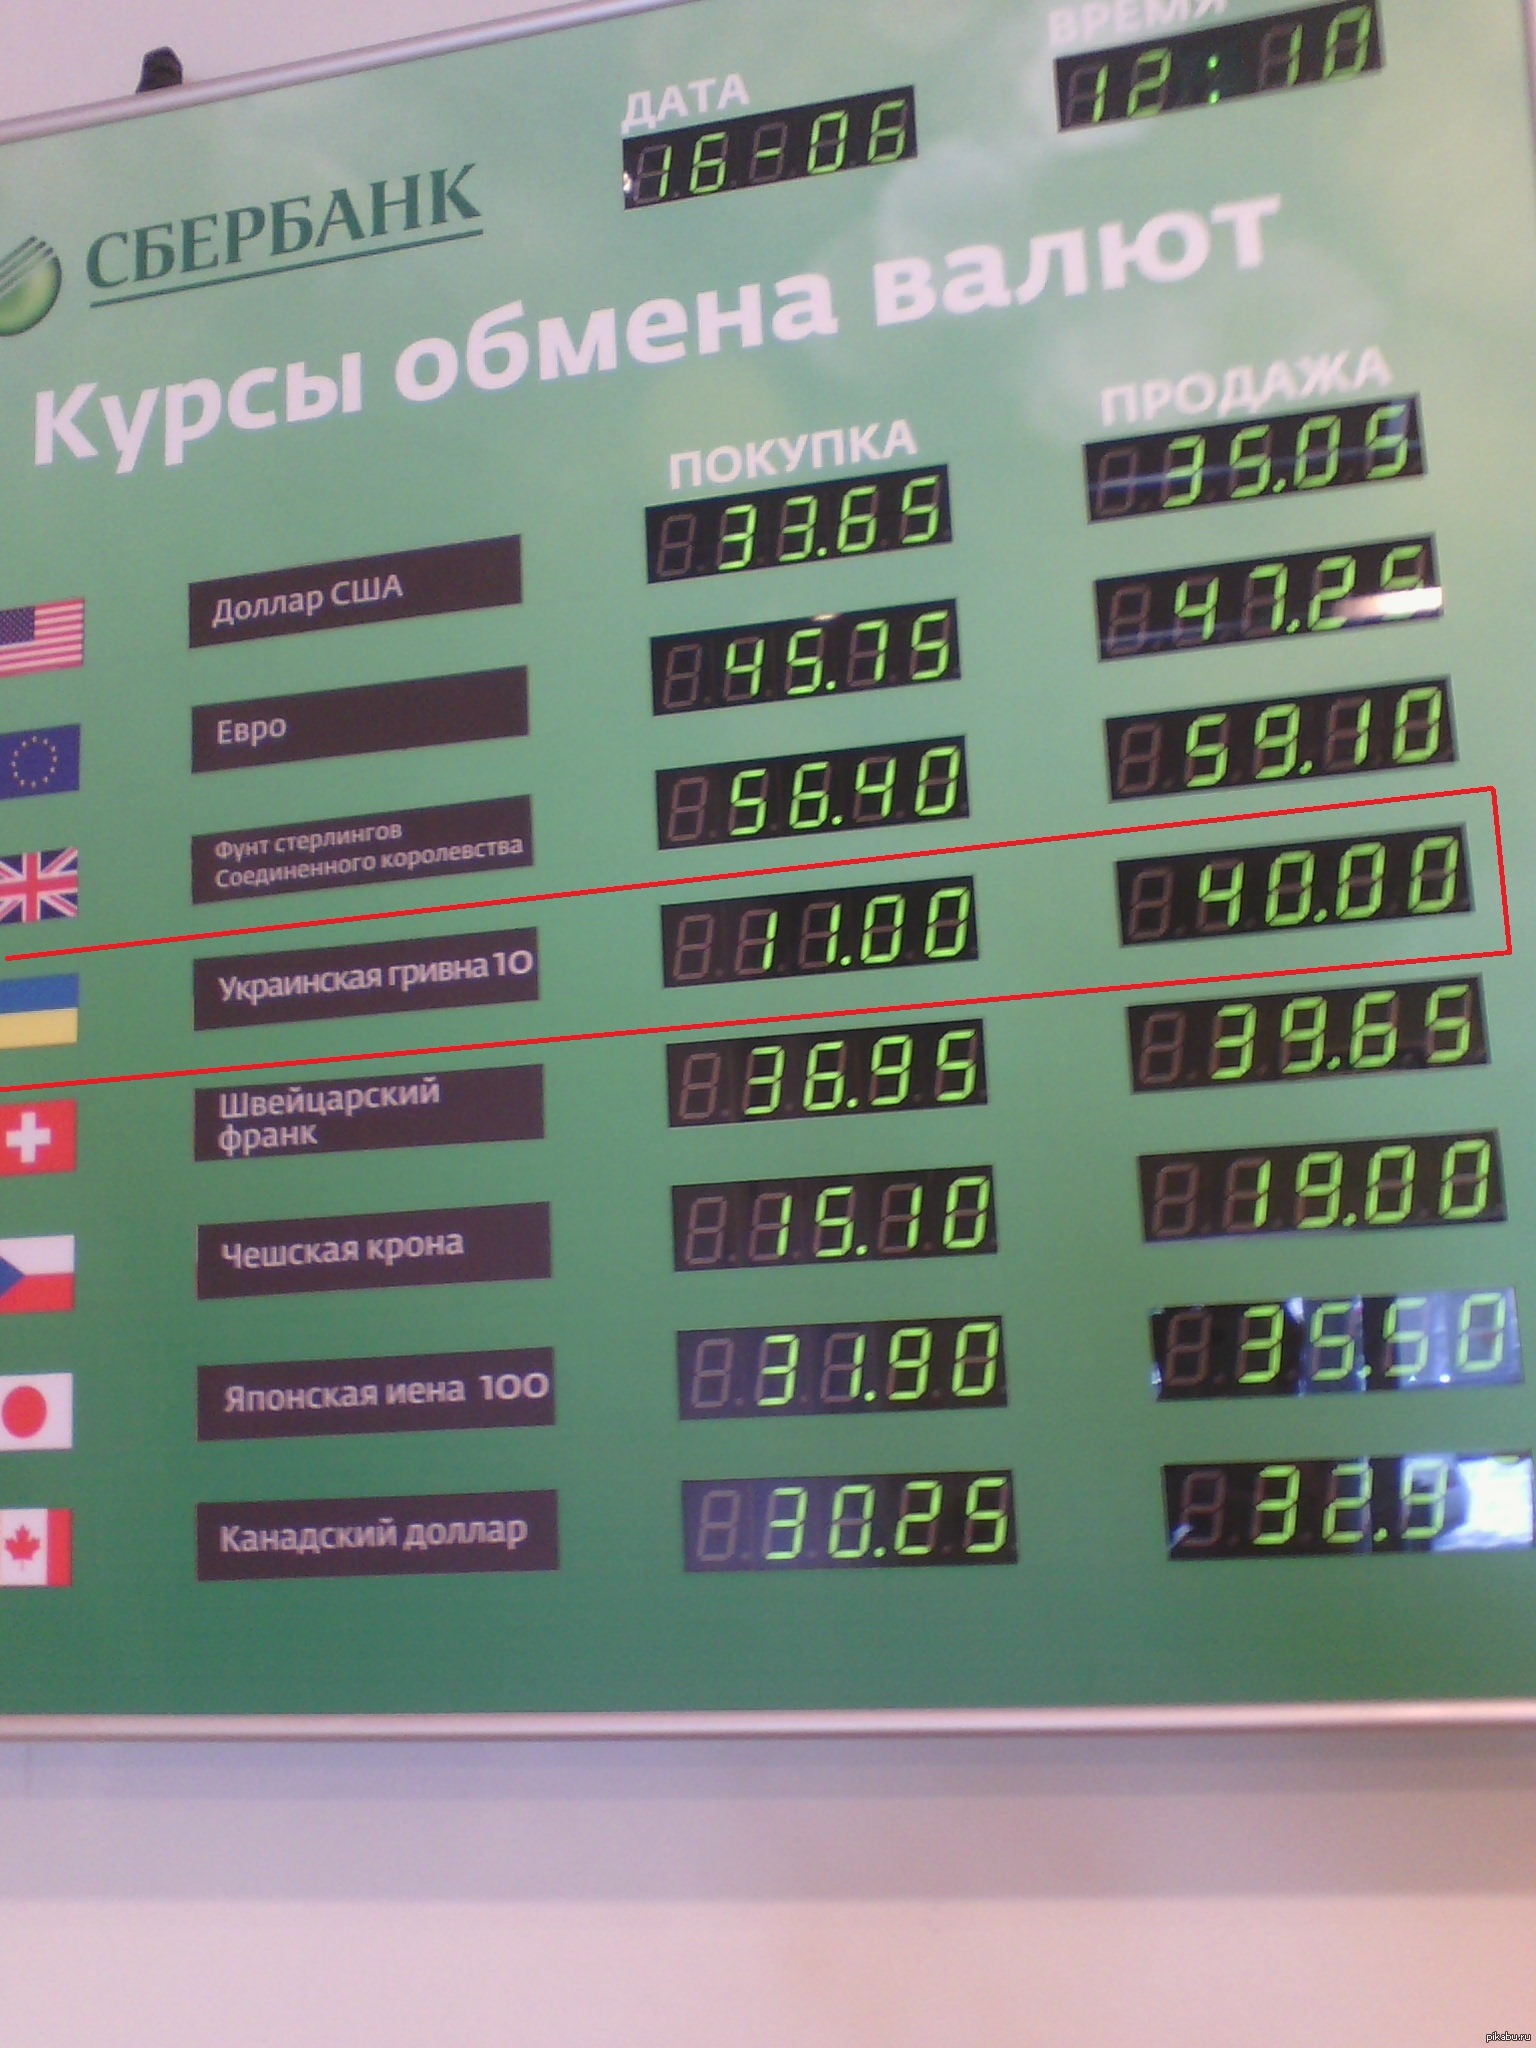 Купить юани в сбербанке в москве. Сбербанк в Украине с гривнами. Запрещенные гривны в России.